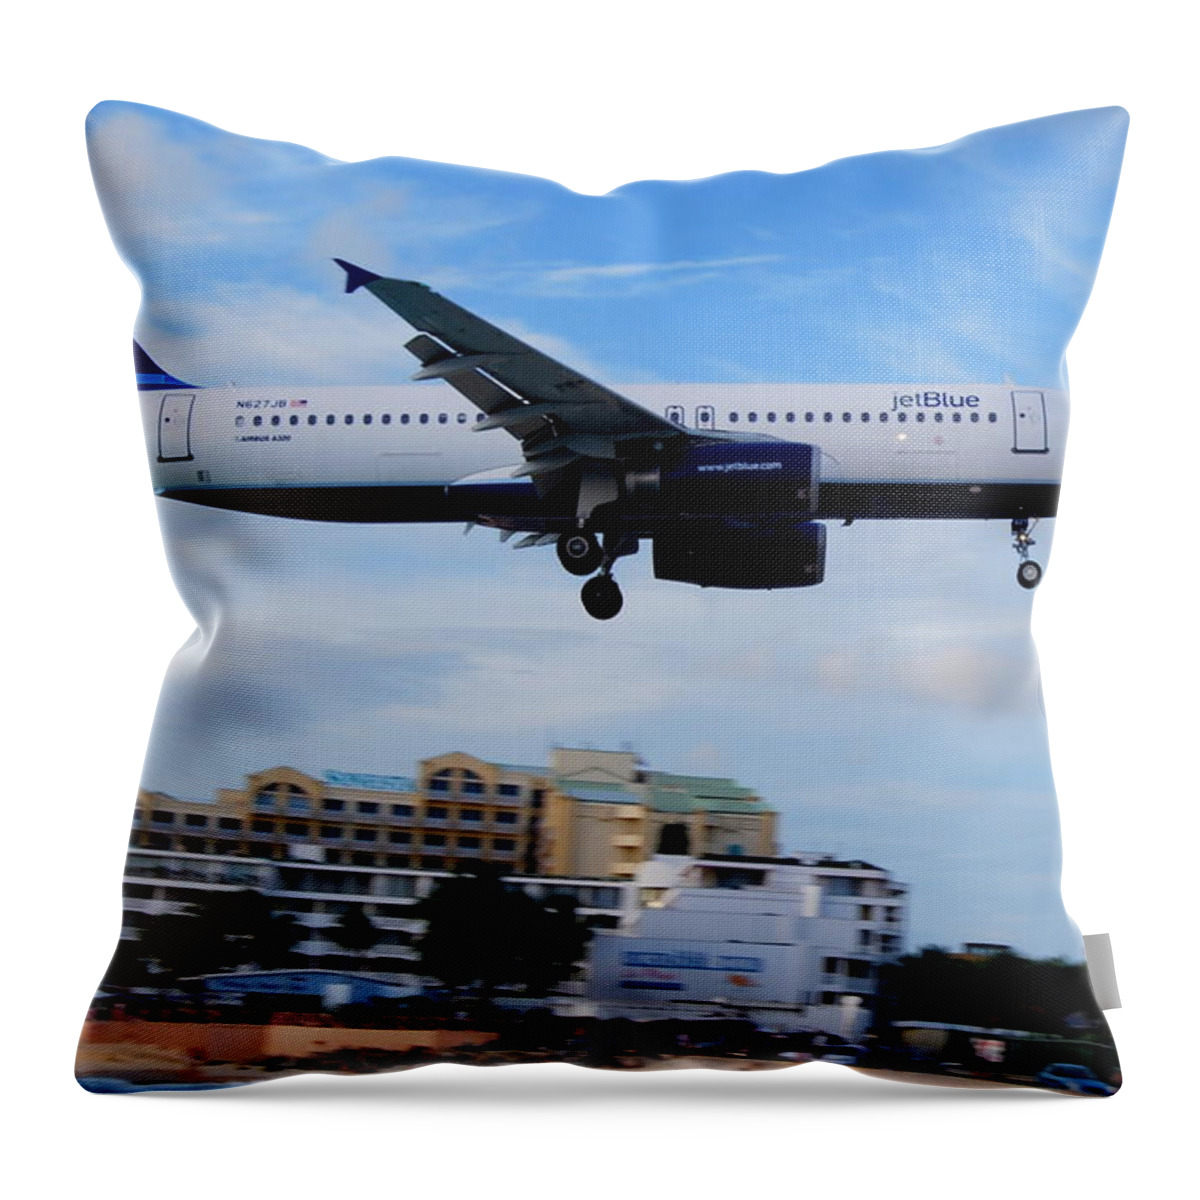 St. Maarten Throw Pillow featuring the photograph Heads Up in St. Maarten by Caroline Stella